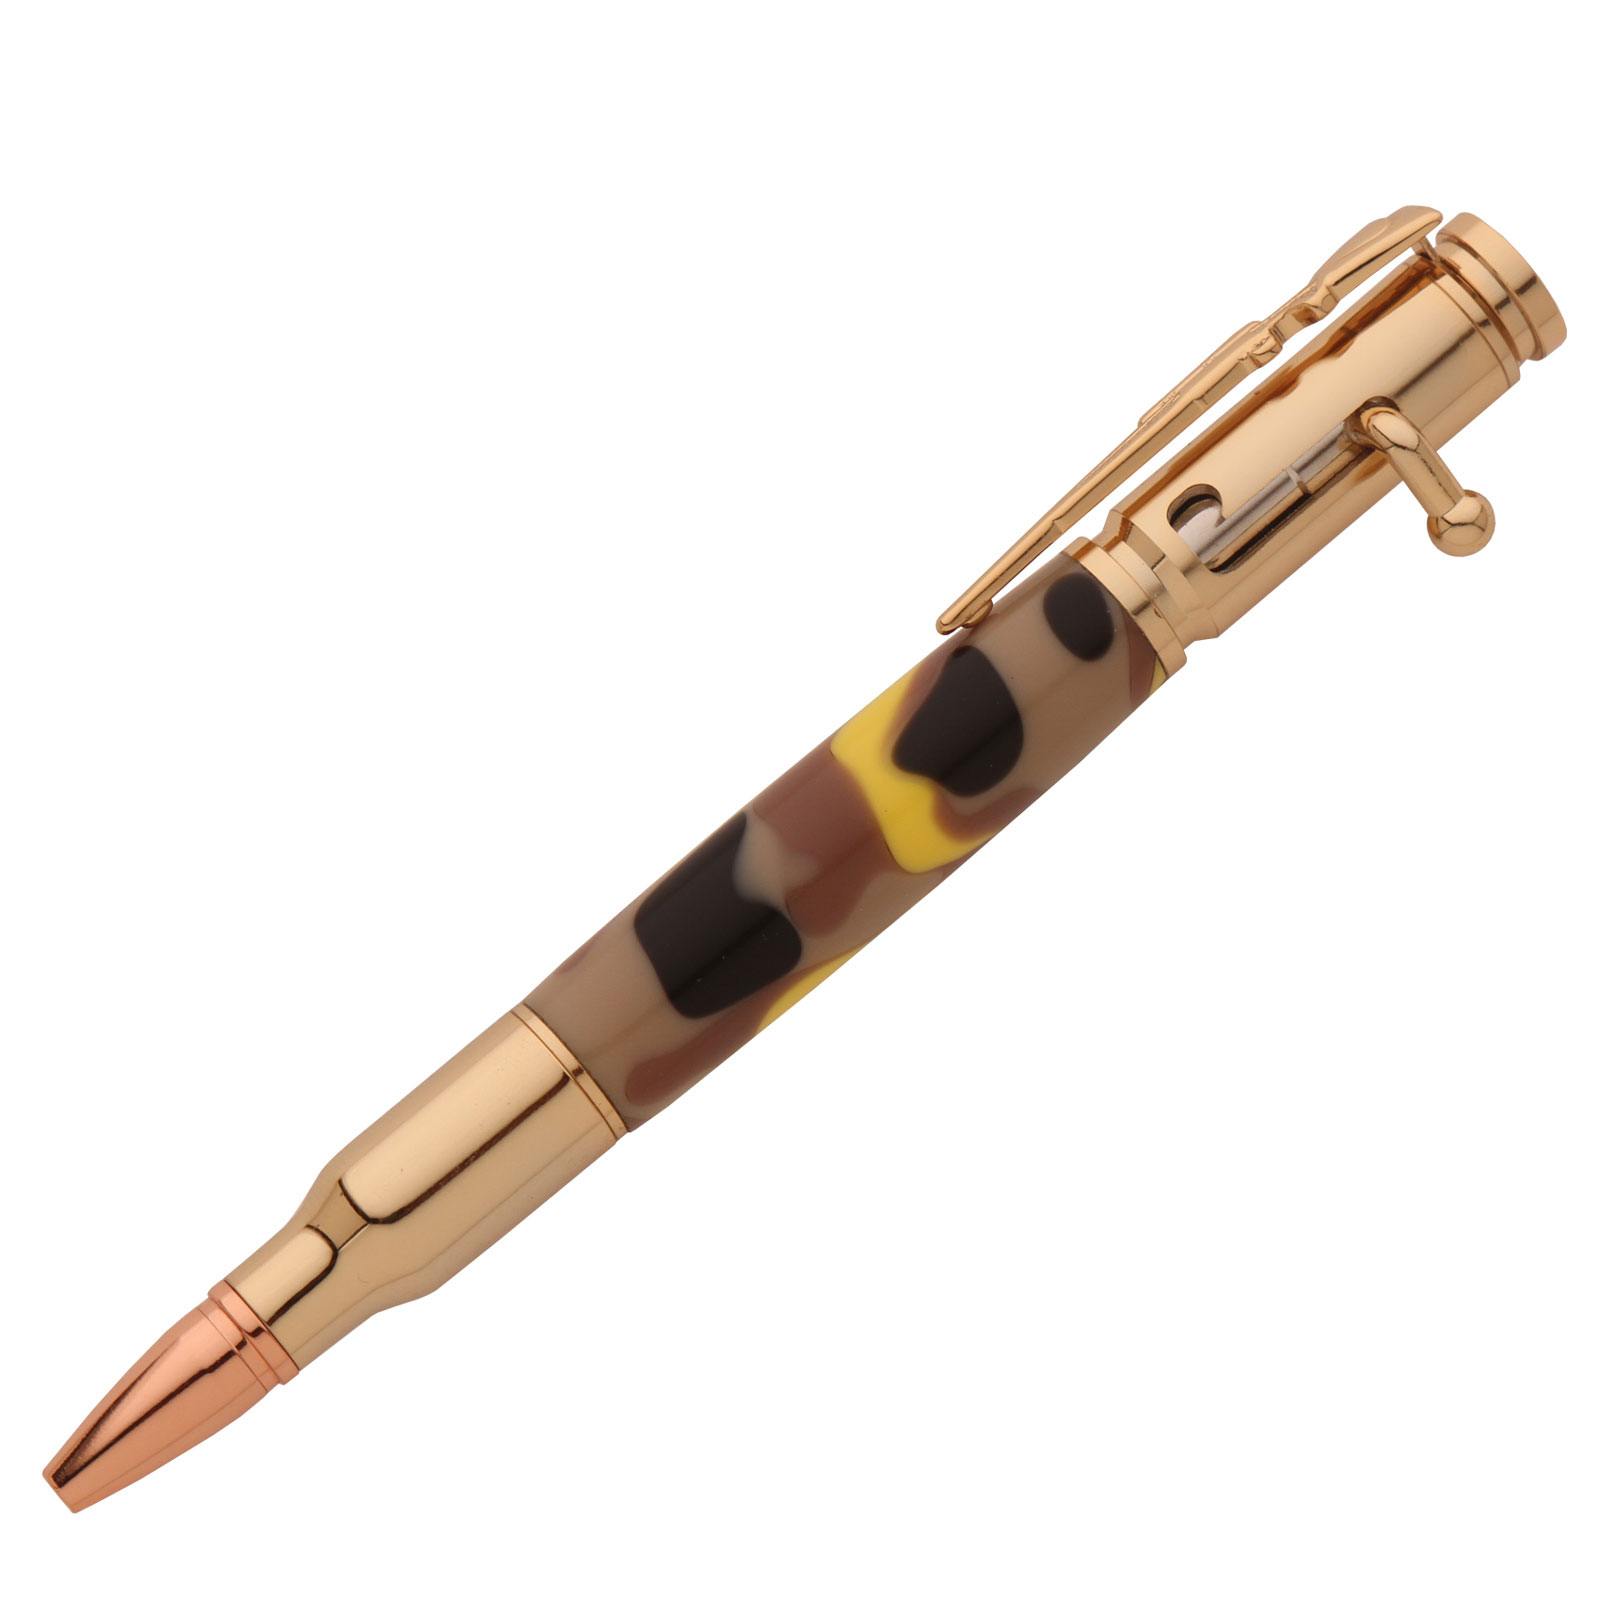 Bolt Action Pen with Case,Wood Pen& Case,30 Caliber Pen,Bullet Pen,Dark Wood Pen